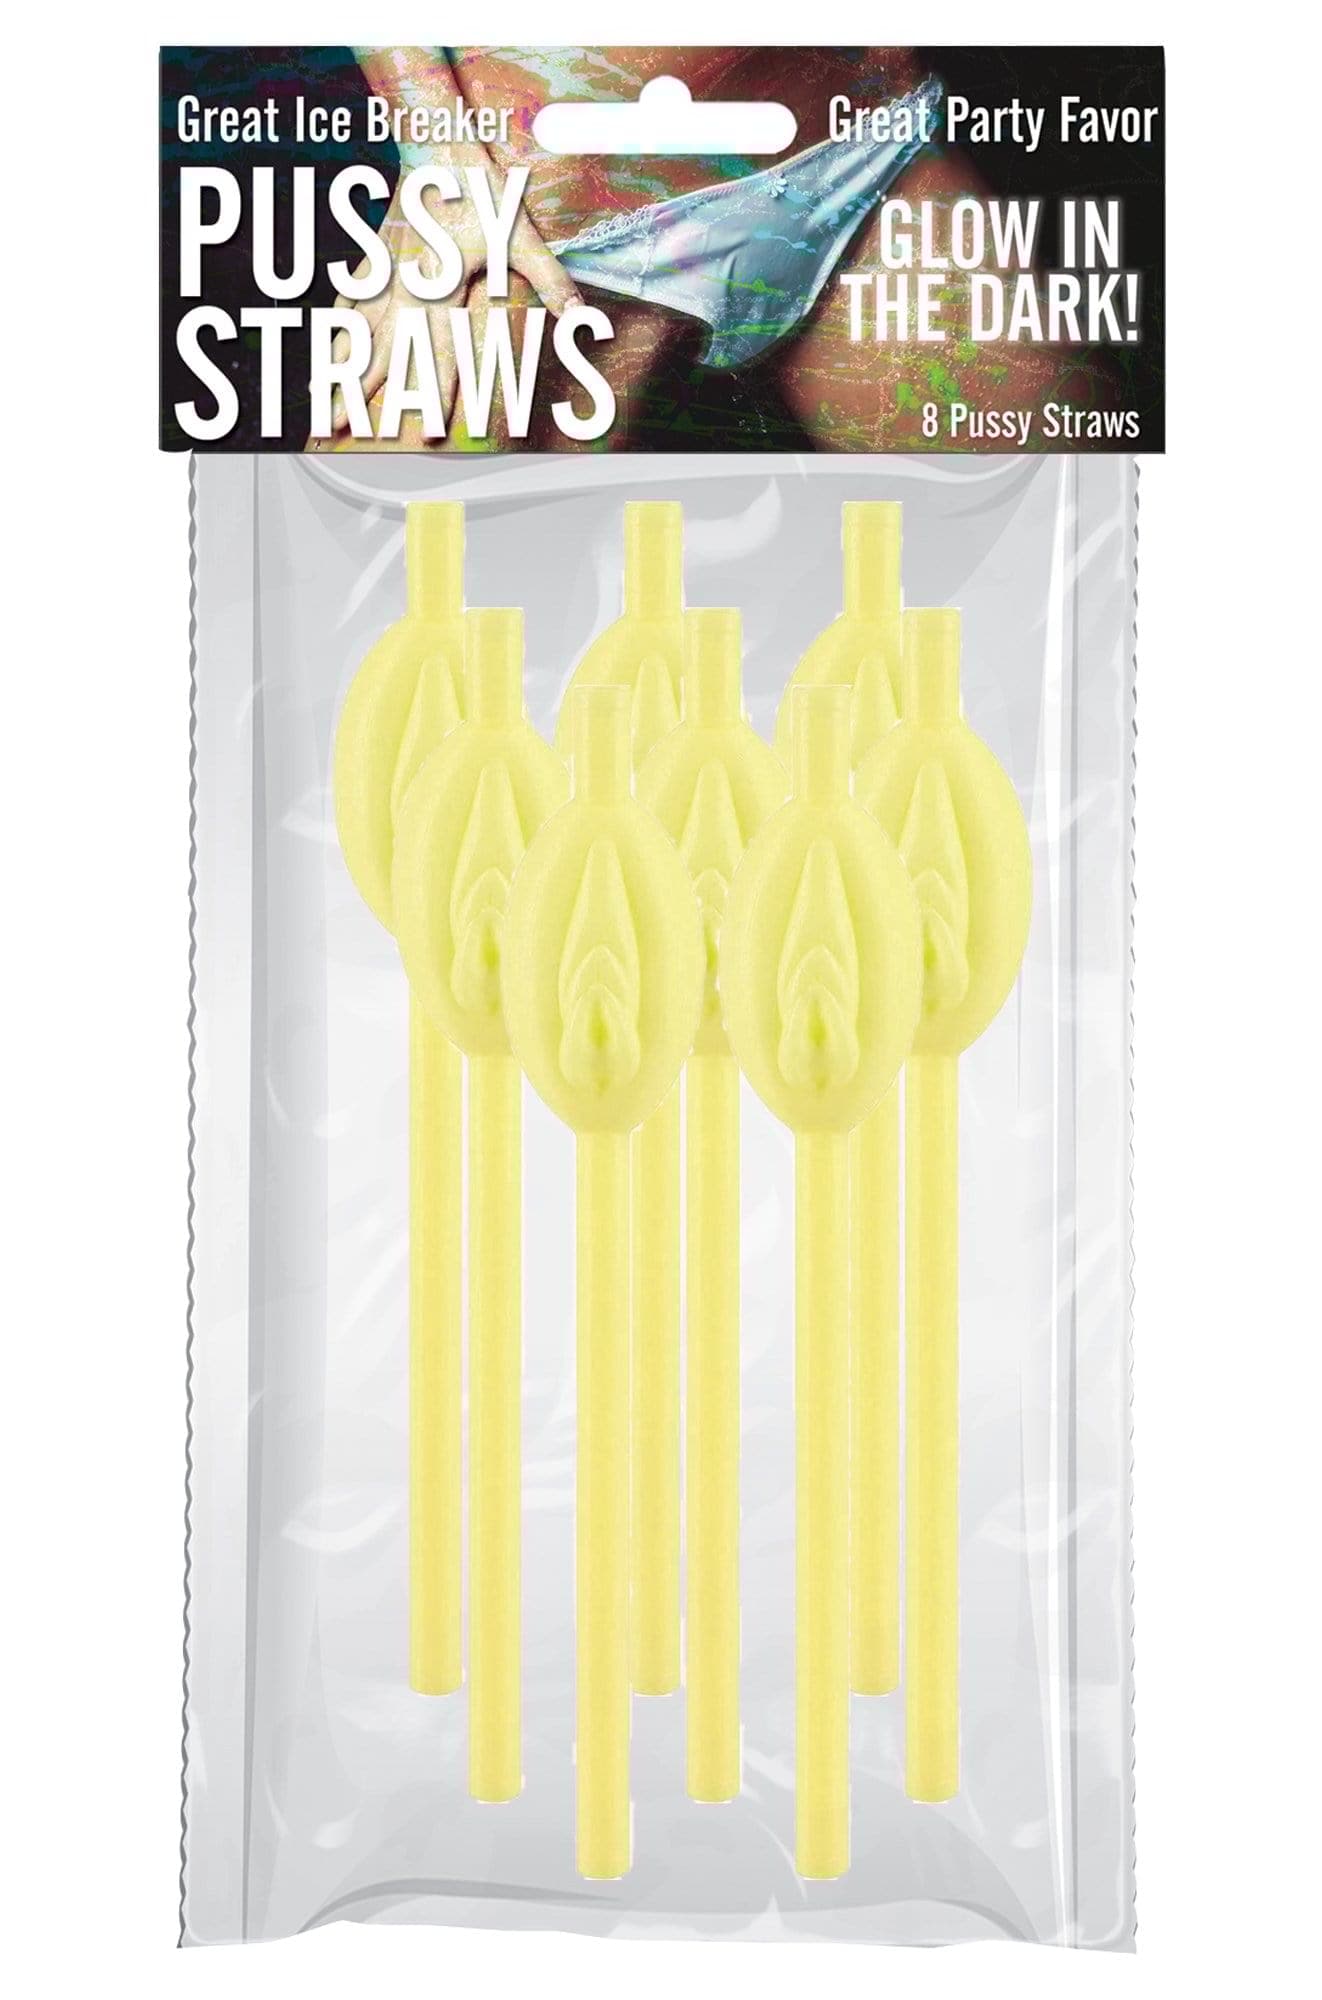 pussy straws glow in the dark